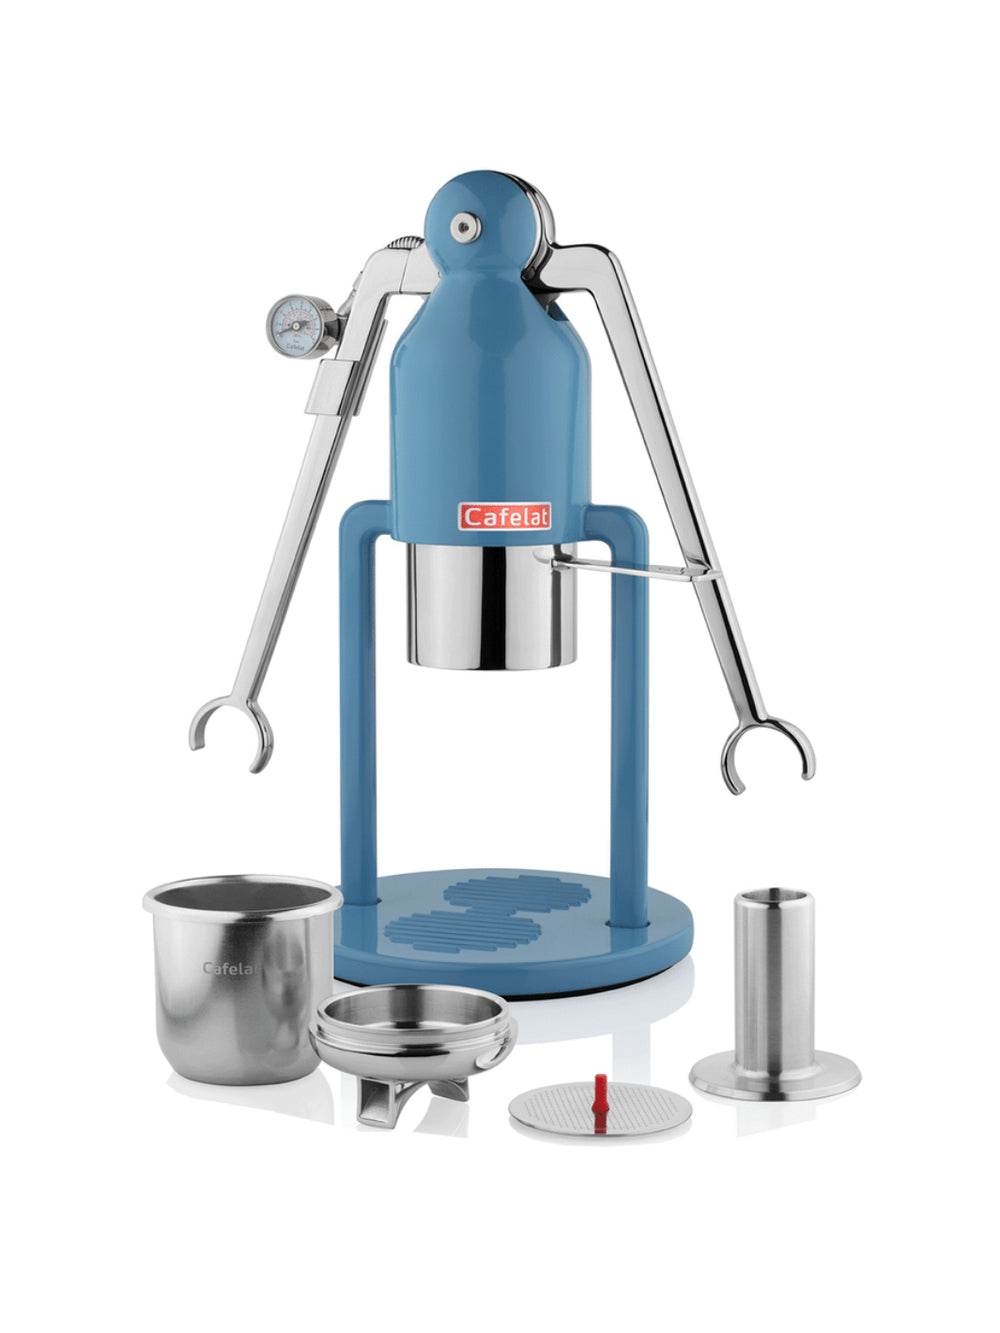 CAFELAT Robot Barista Espresso Maker